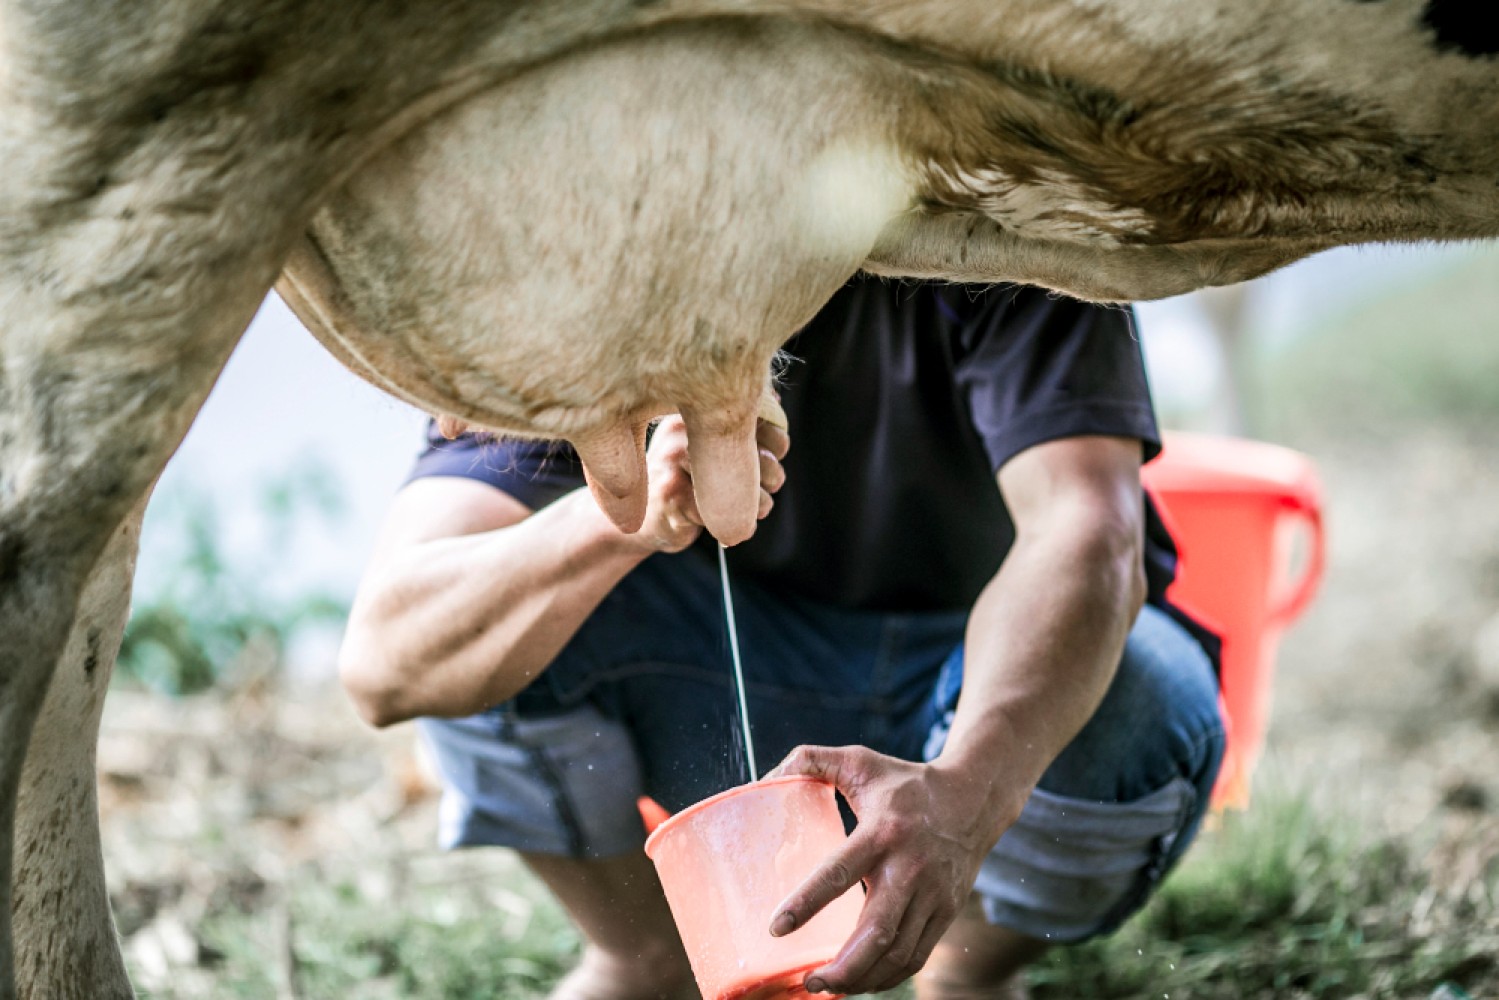 Традиционные и современные методы доения коров постоянно эволюционируют, чтобы увеличить продуктивность и эффективность молочного производства. В этом обзоре мы рассмотрим различные типы доильных установок и обсудим, как они используются в современном молочном хозяйстве.